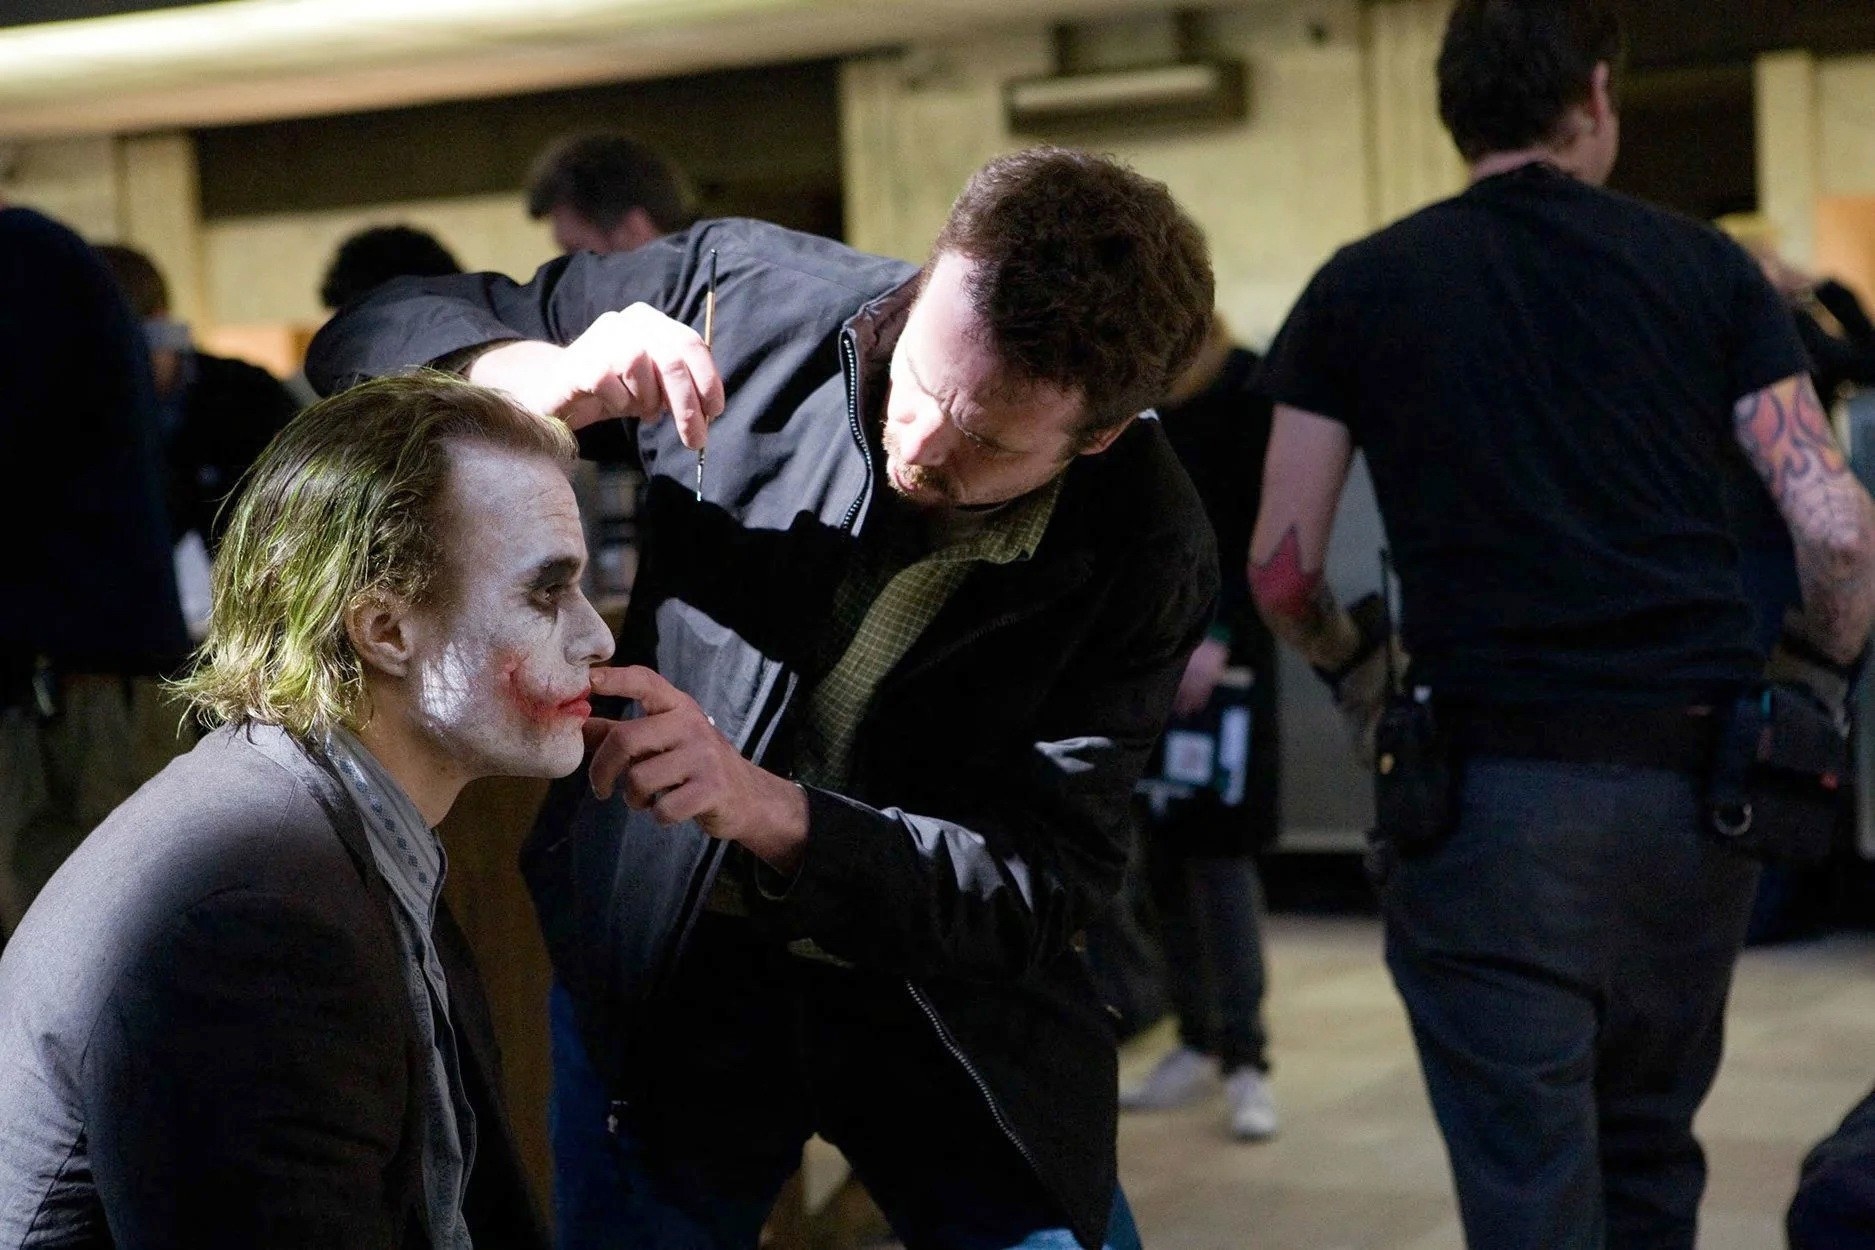 A man applies makeup to the joker on set